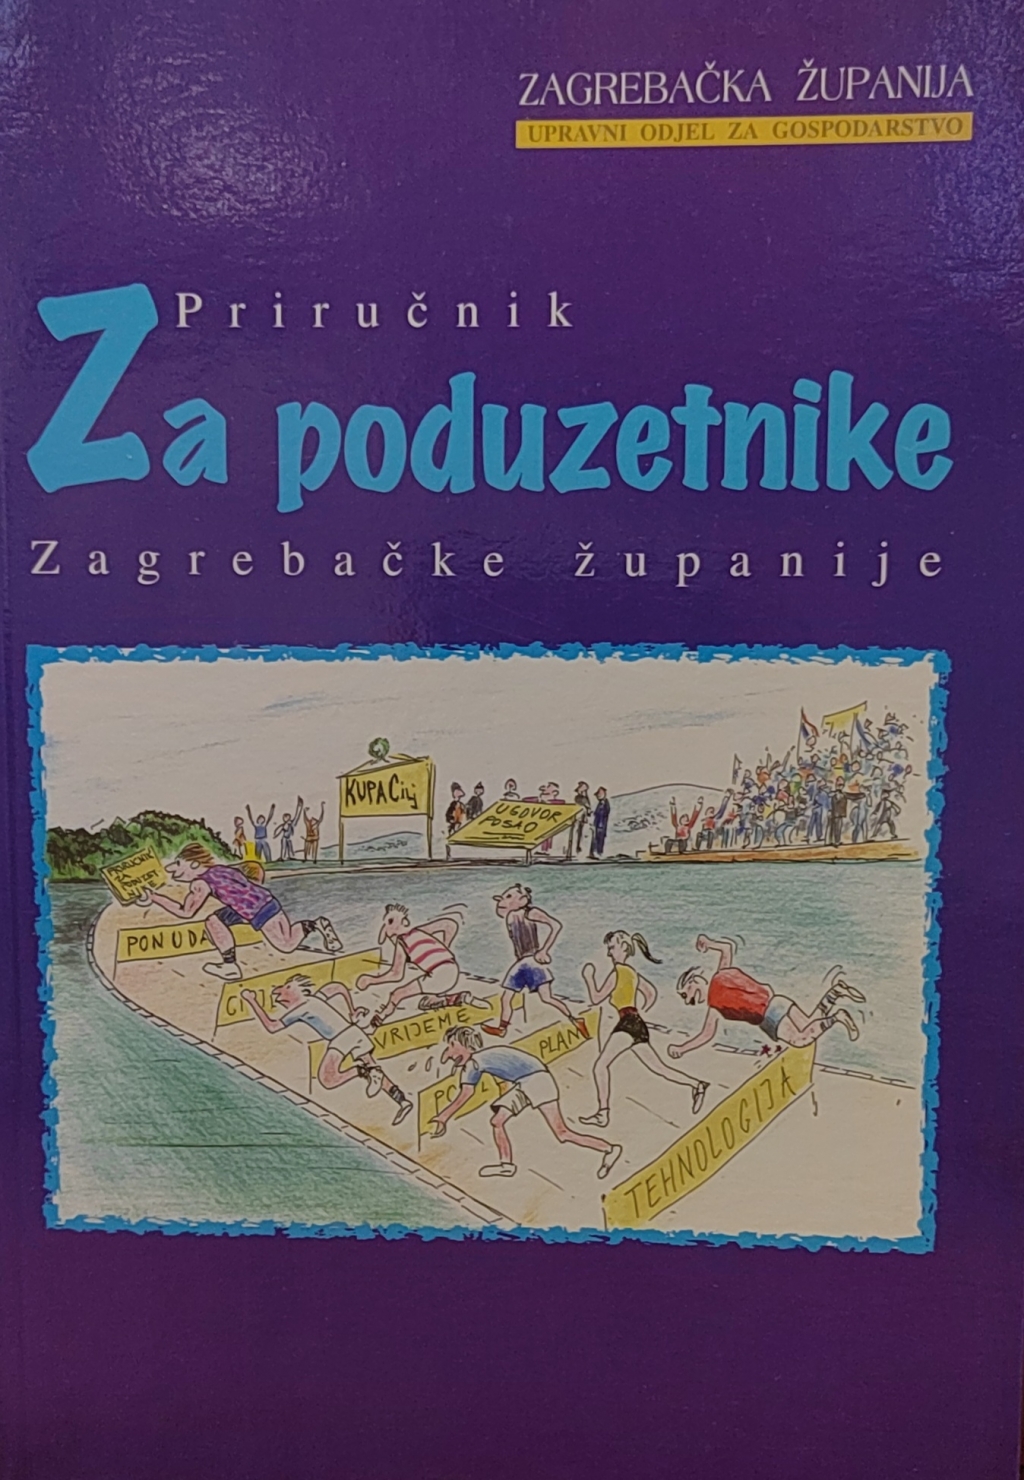 Priručnik za poduzetnike Zagrebačke županije